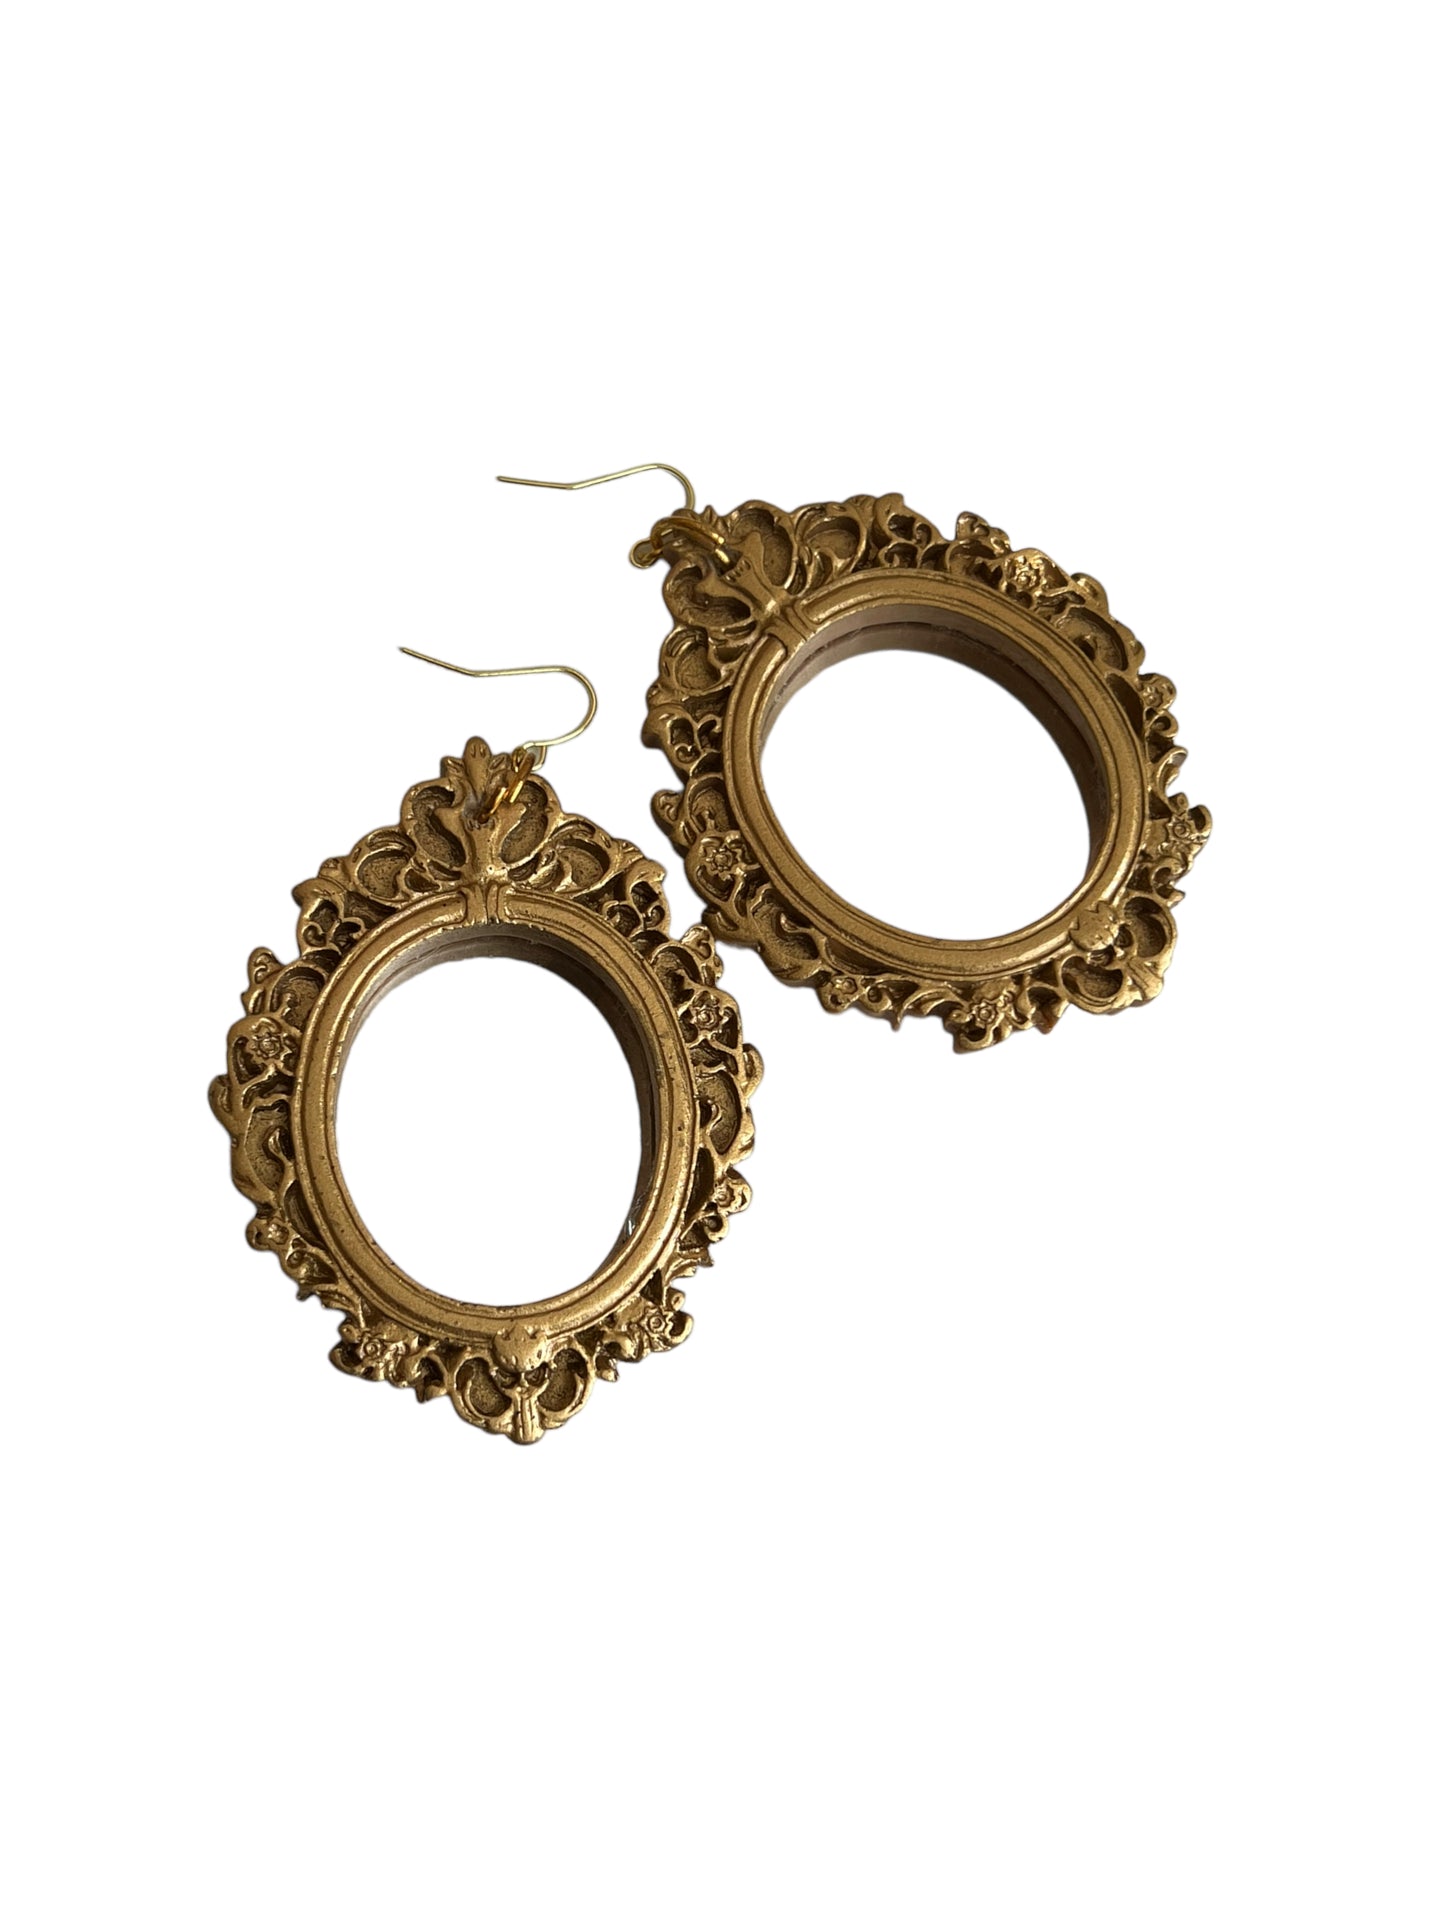 Vintage Inspired Mirror Dangle Earrings